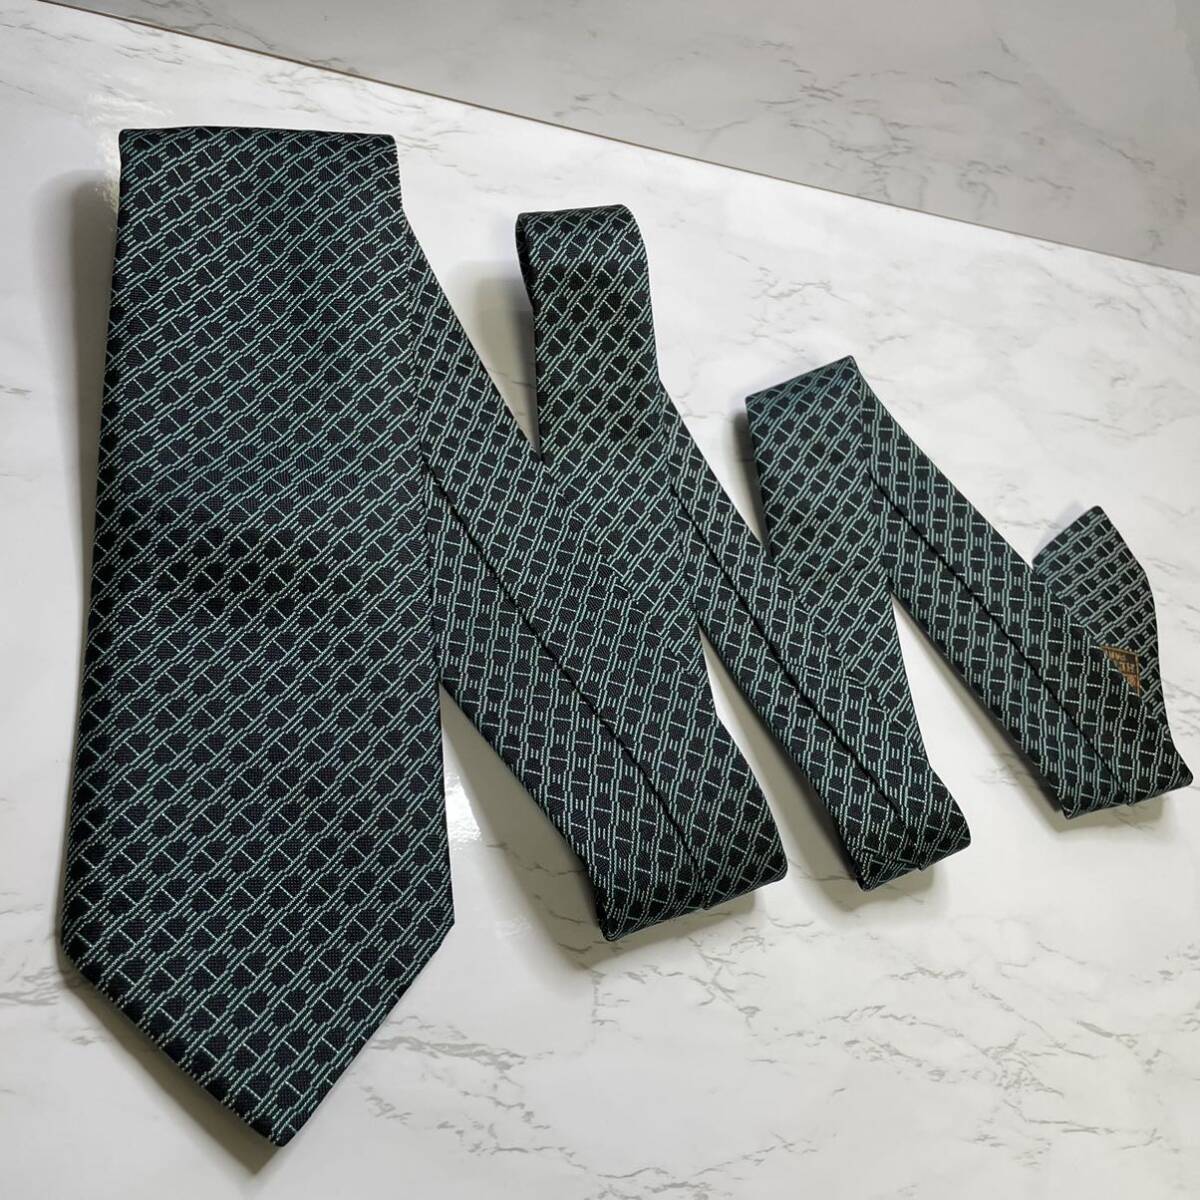  не использовался класс HERMES галстук действующий H рисунок вышивка fasone высококлассный шелк популярный 